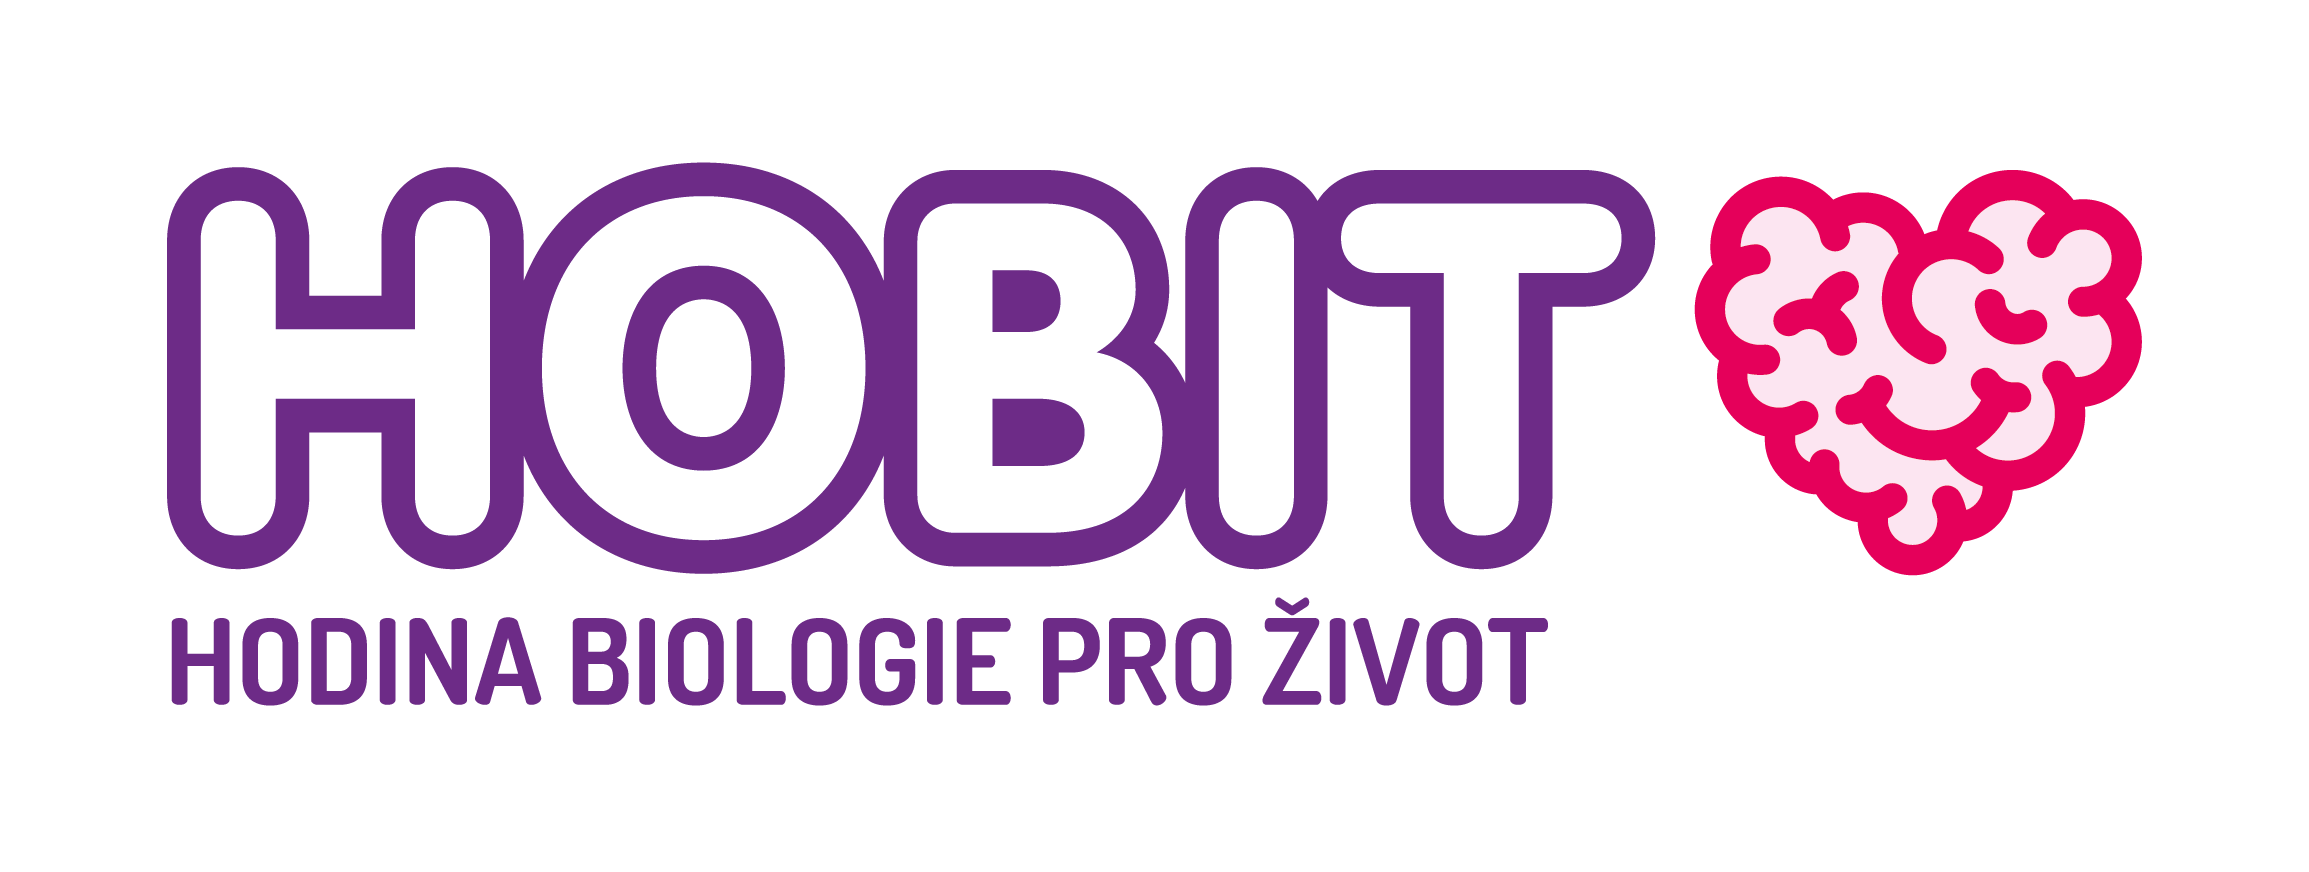 logo hobit.png